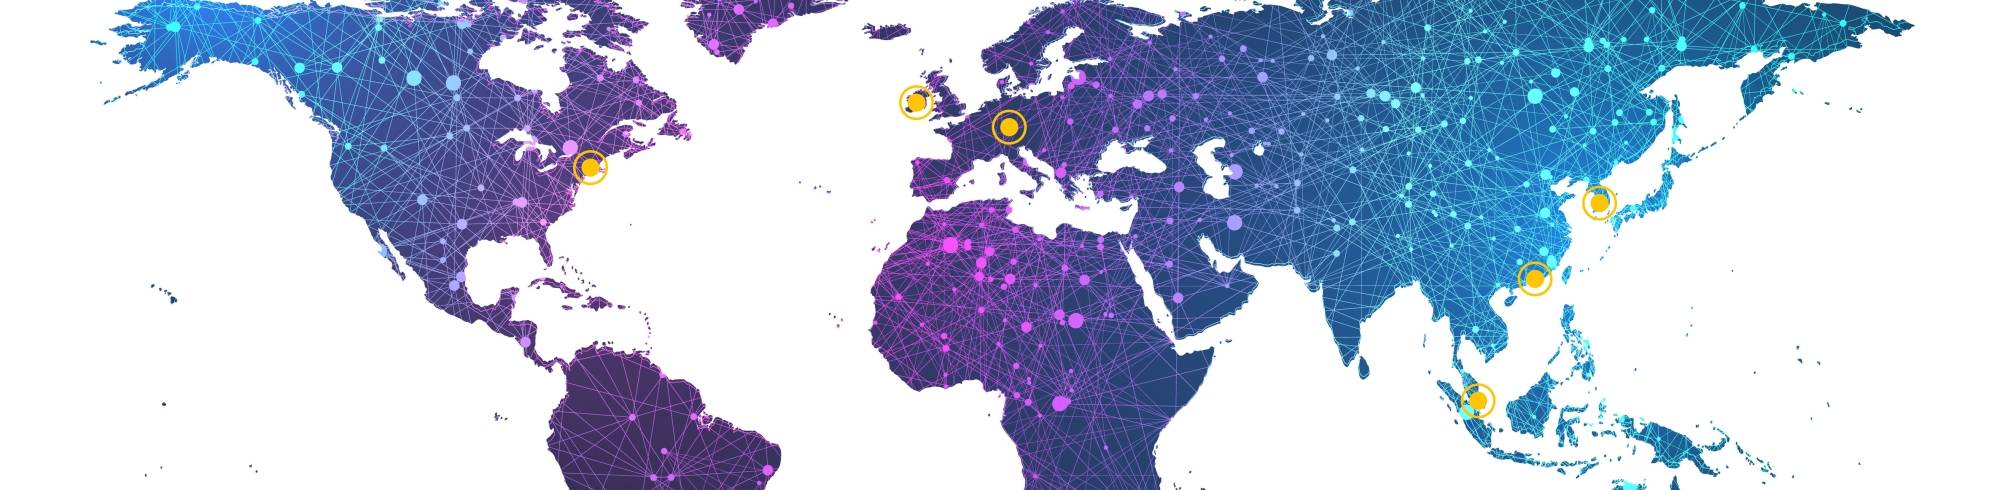 Karte der weltweiten Standorte von Dymax, einschließlich Nordamerika, Asien und Europa​​​​​​​